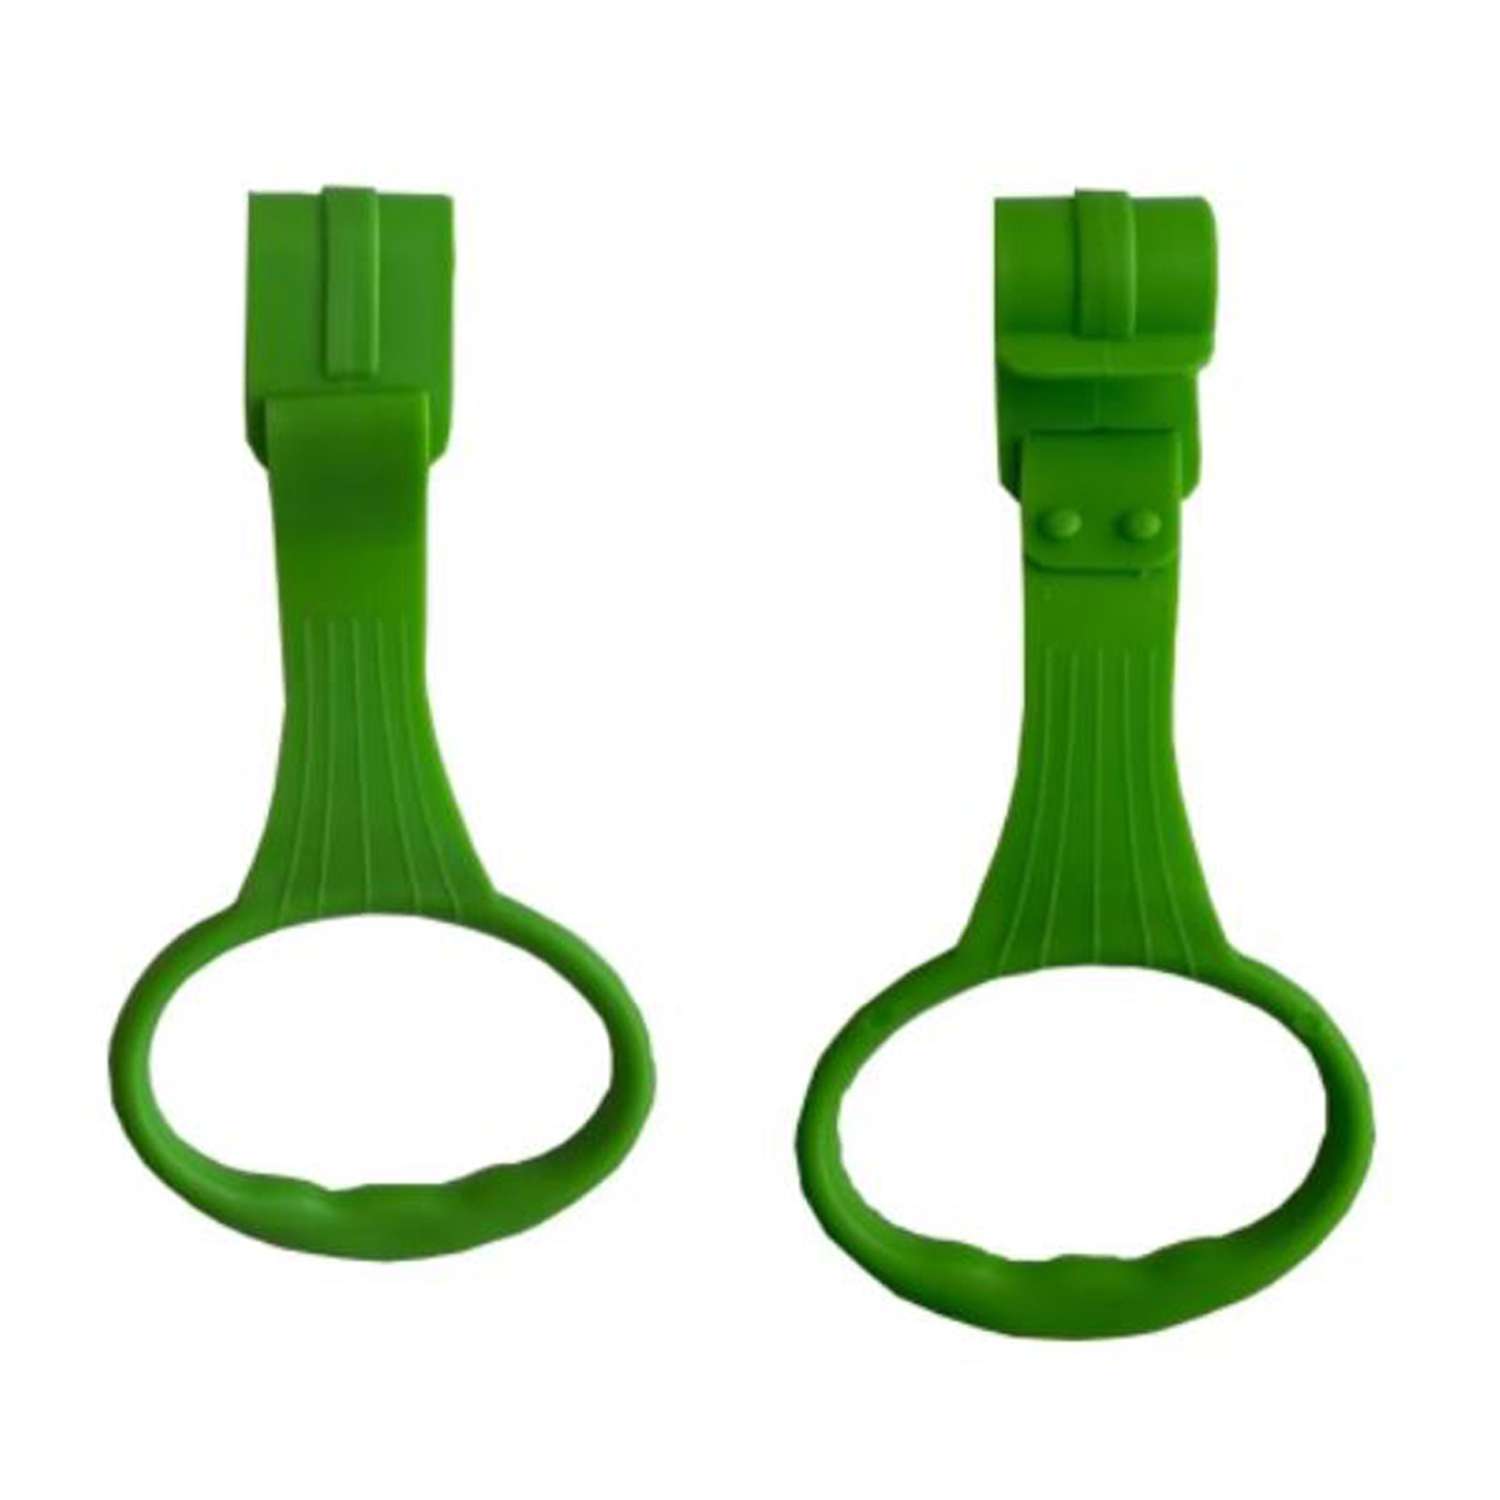 Пластиковые кольца Floopsi для манежа или барьера подвесные 2 шт kolso-2pc-green - фото 1